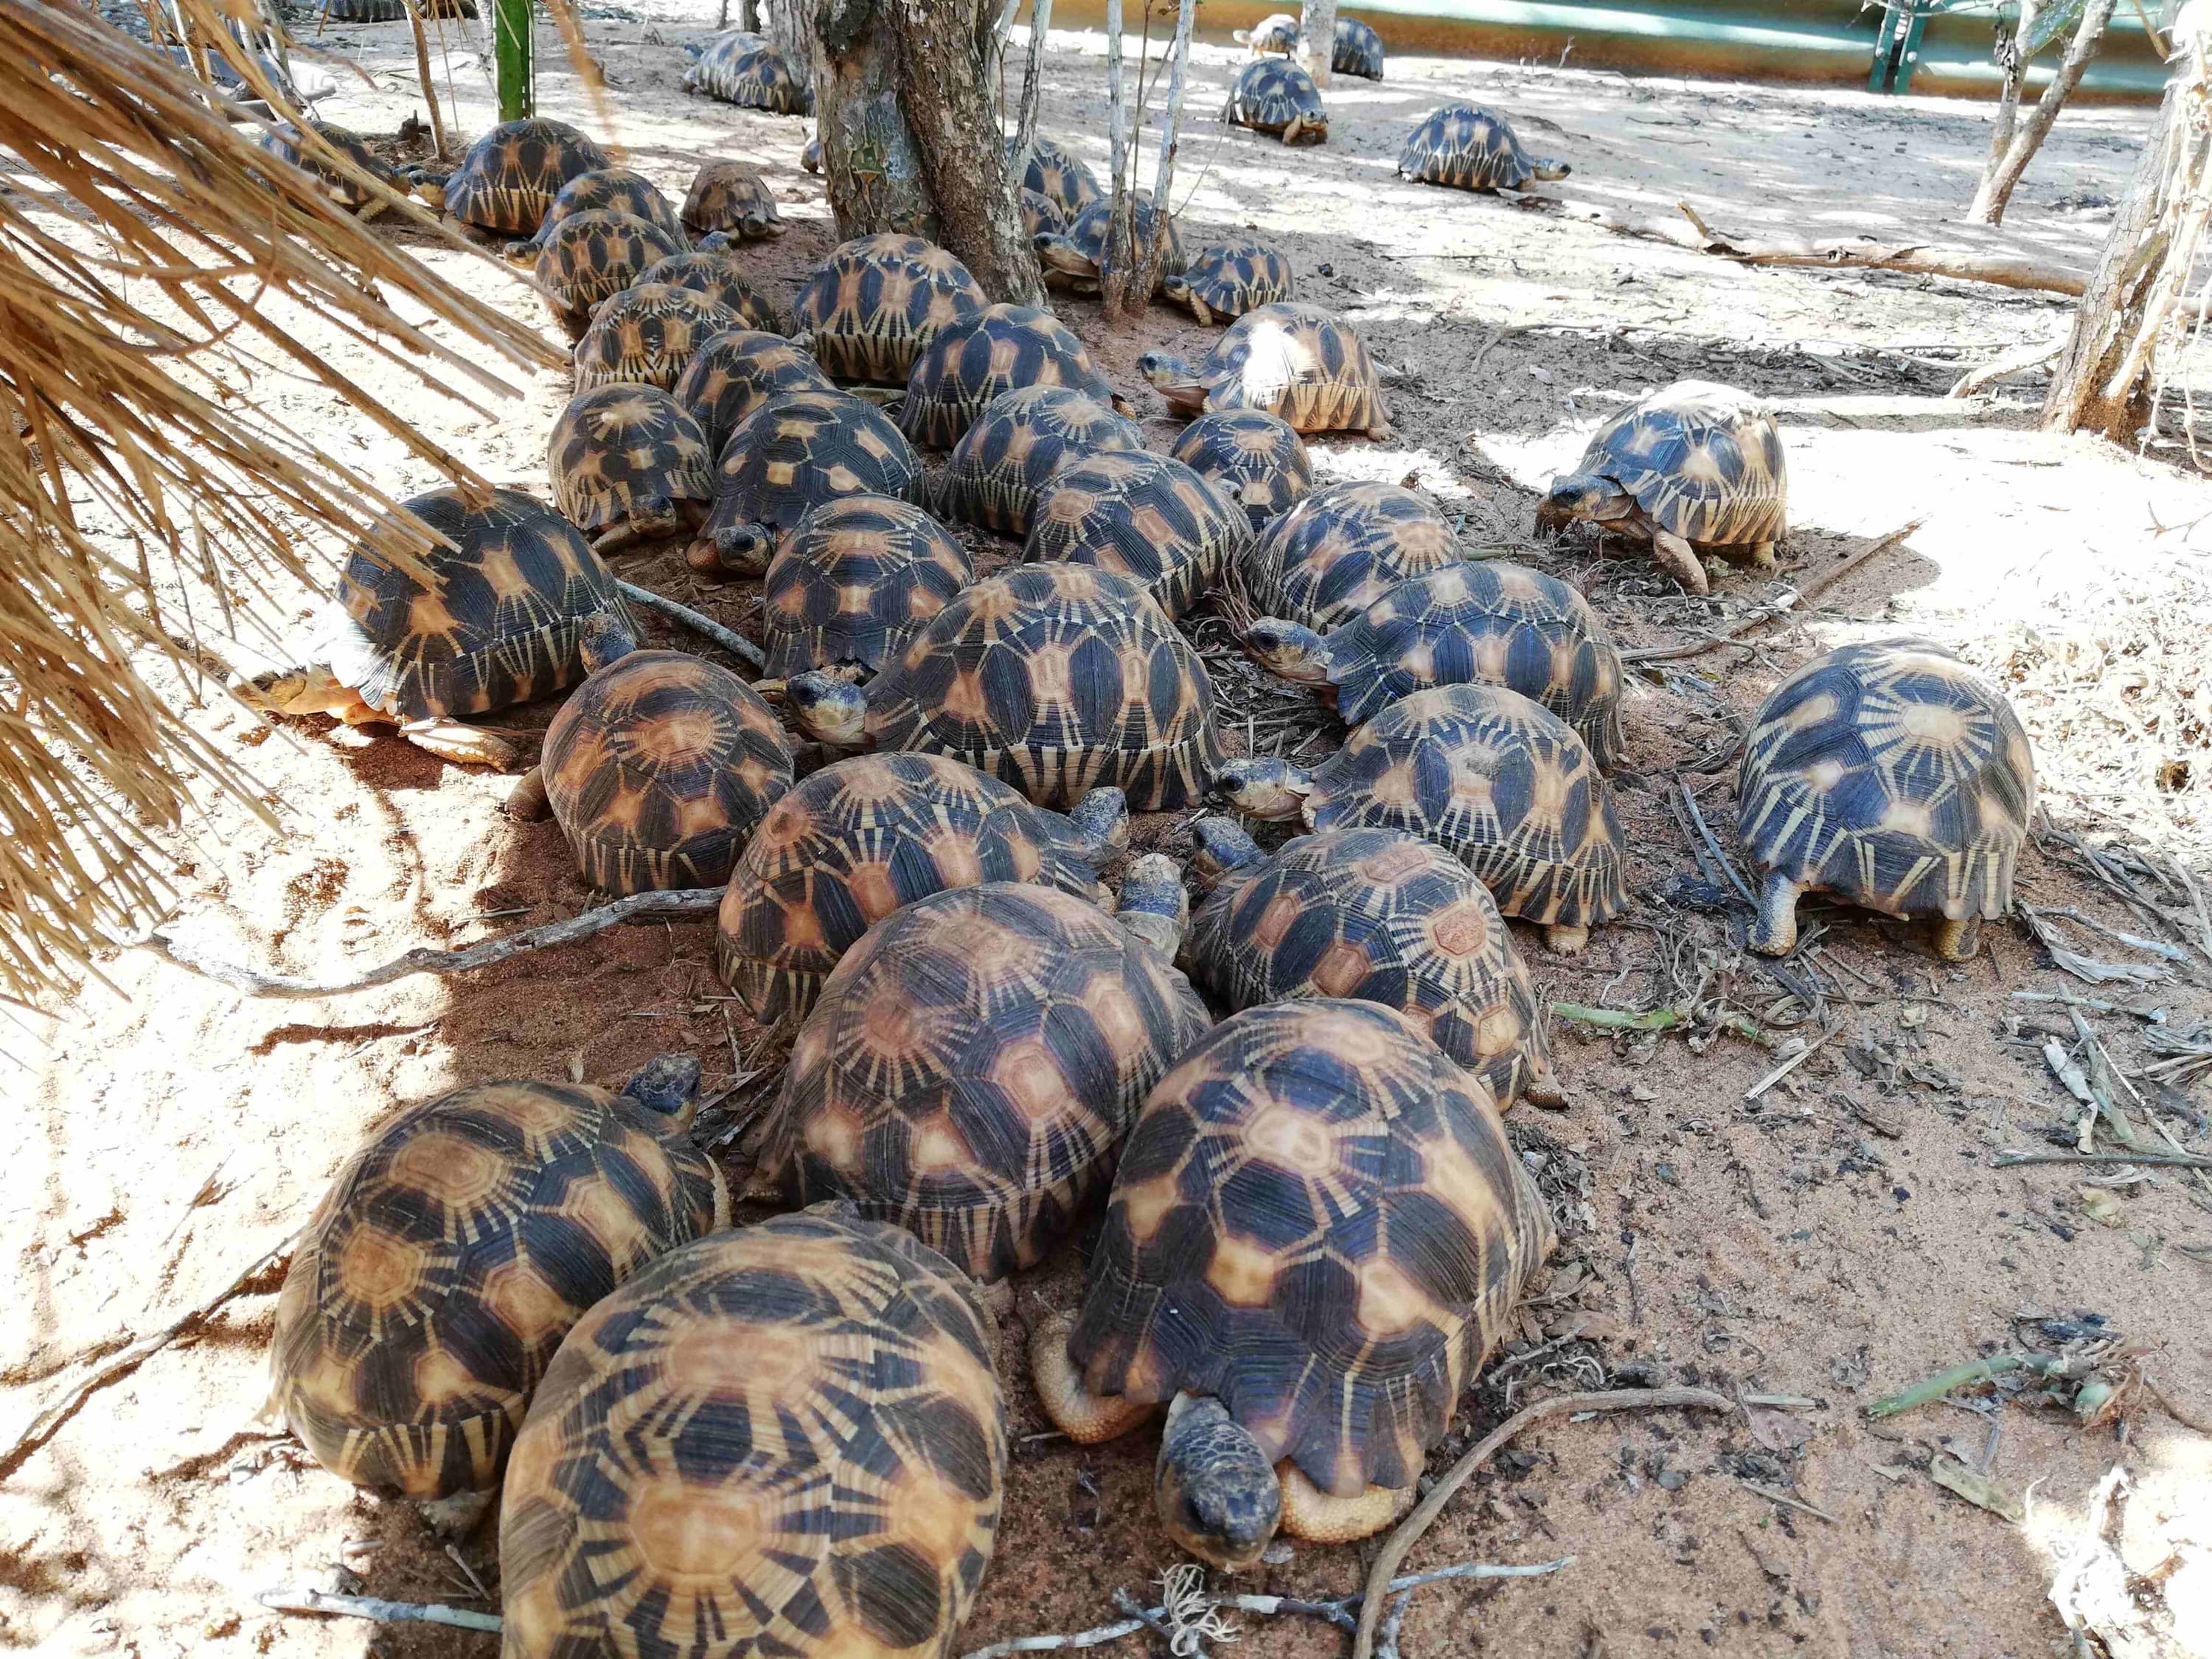 Madagascar radiated tortoises